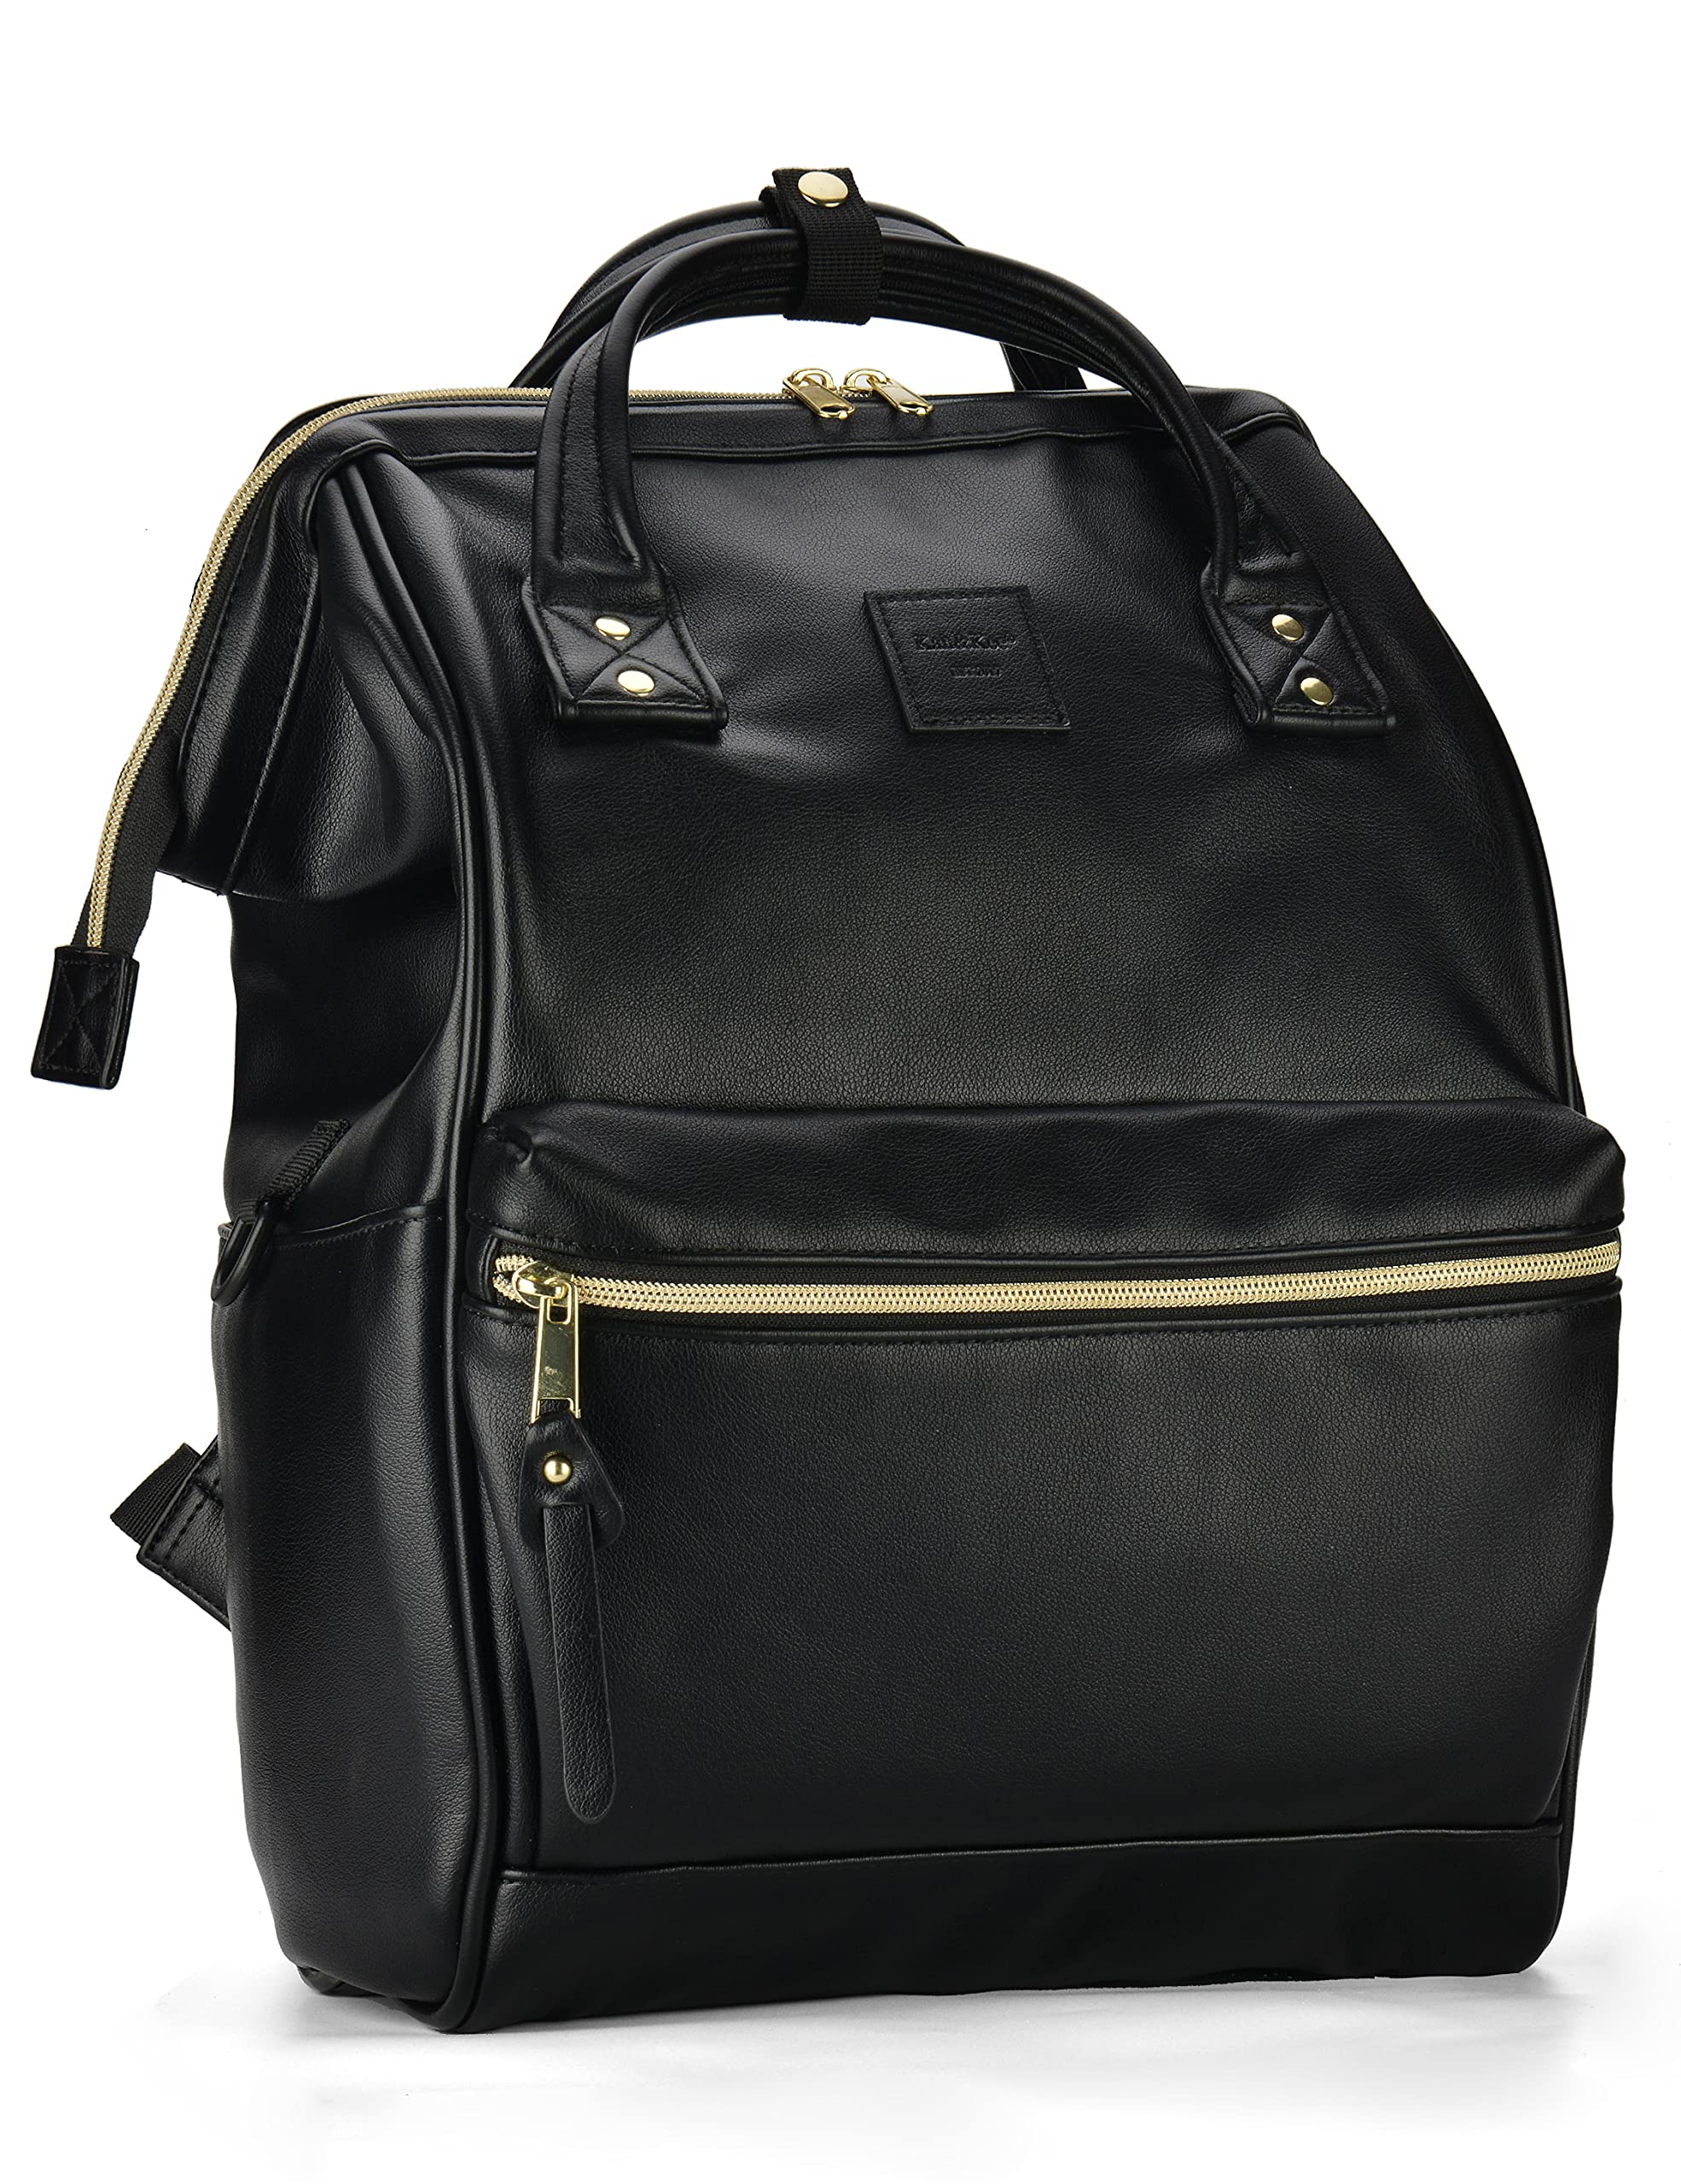 送料無料KahKee Leather Backpack Diaper Bag Laptop Travel Doctor Teacher Bag For Women Man Black II並行輸入品